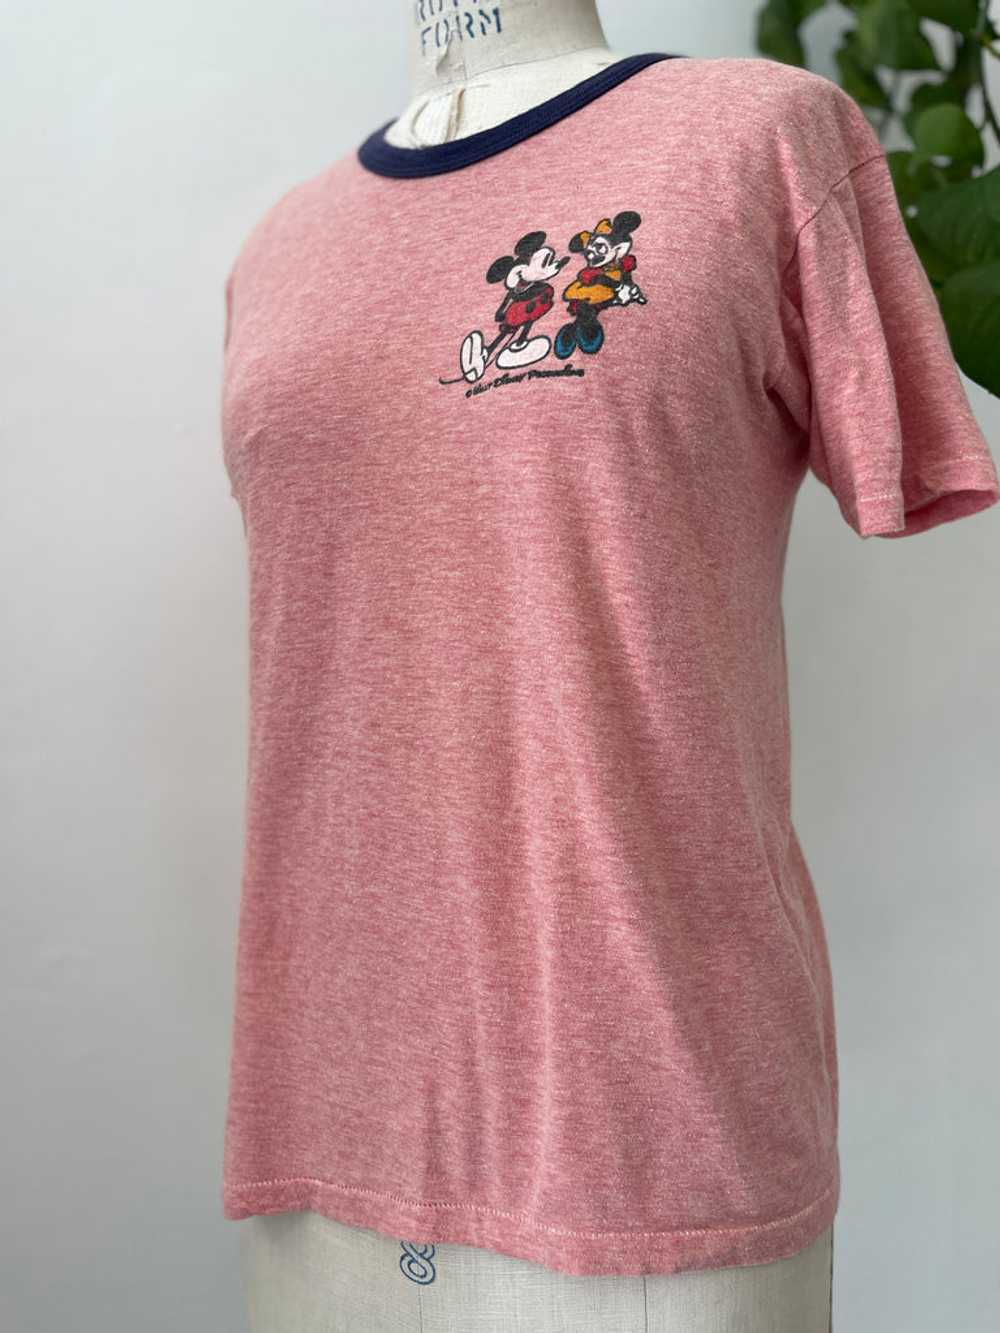 Vintage Disney ringer t shirt - image 3